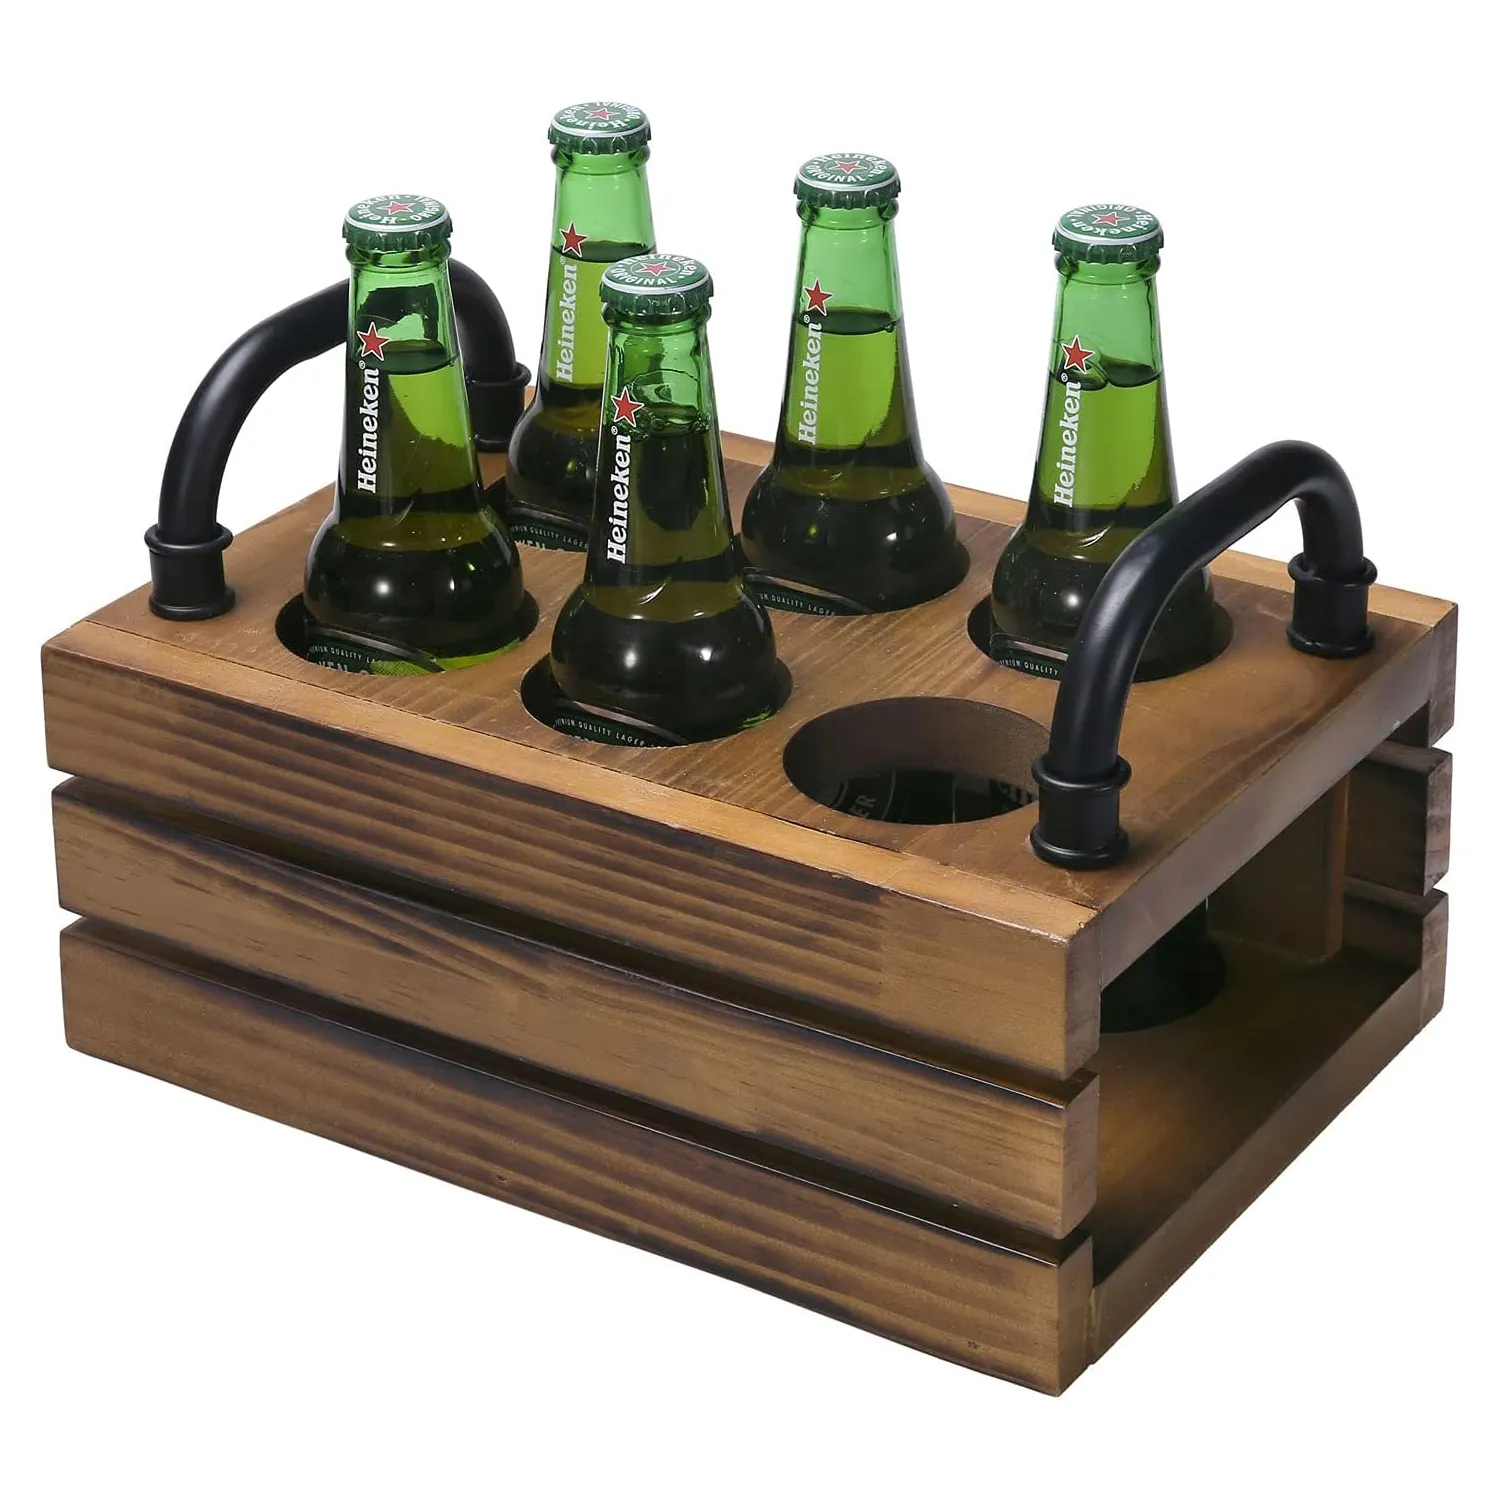 6 Sot素朴な木製ビール瓶クレート木製飲料キャリアサーバーキャディ、ブラックメタルハンドル付き